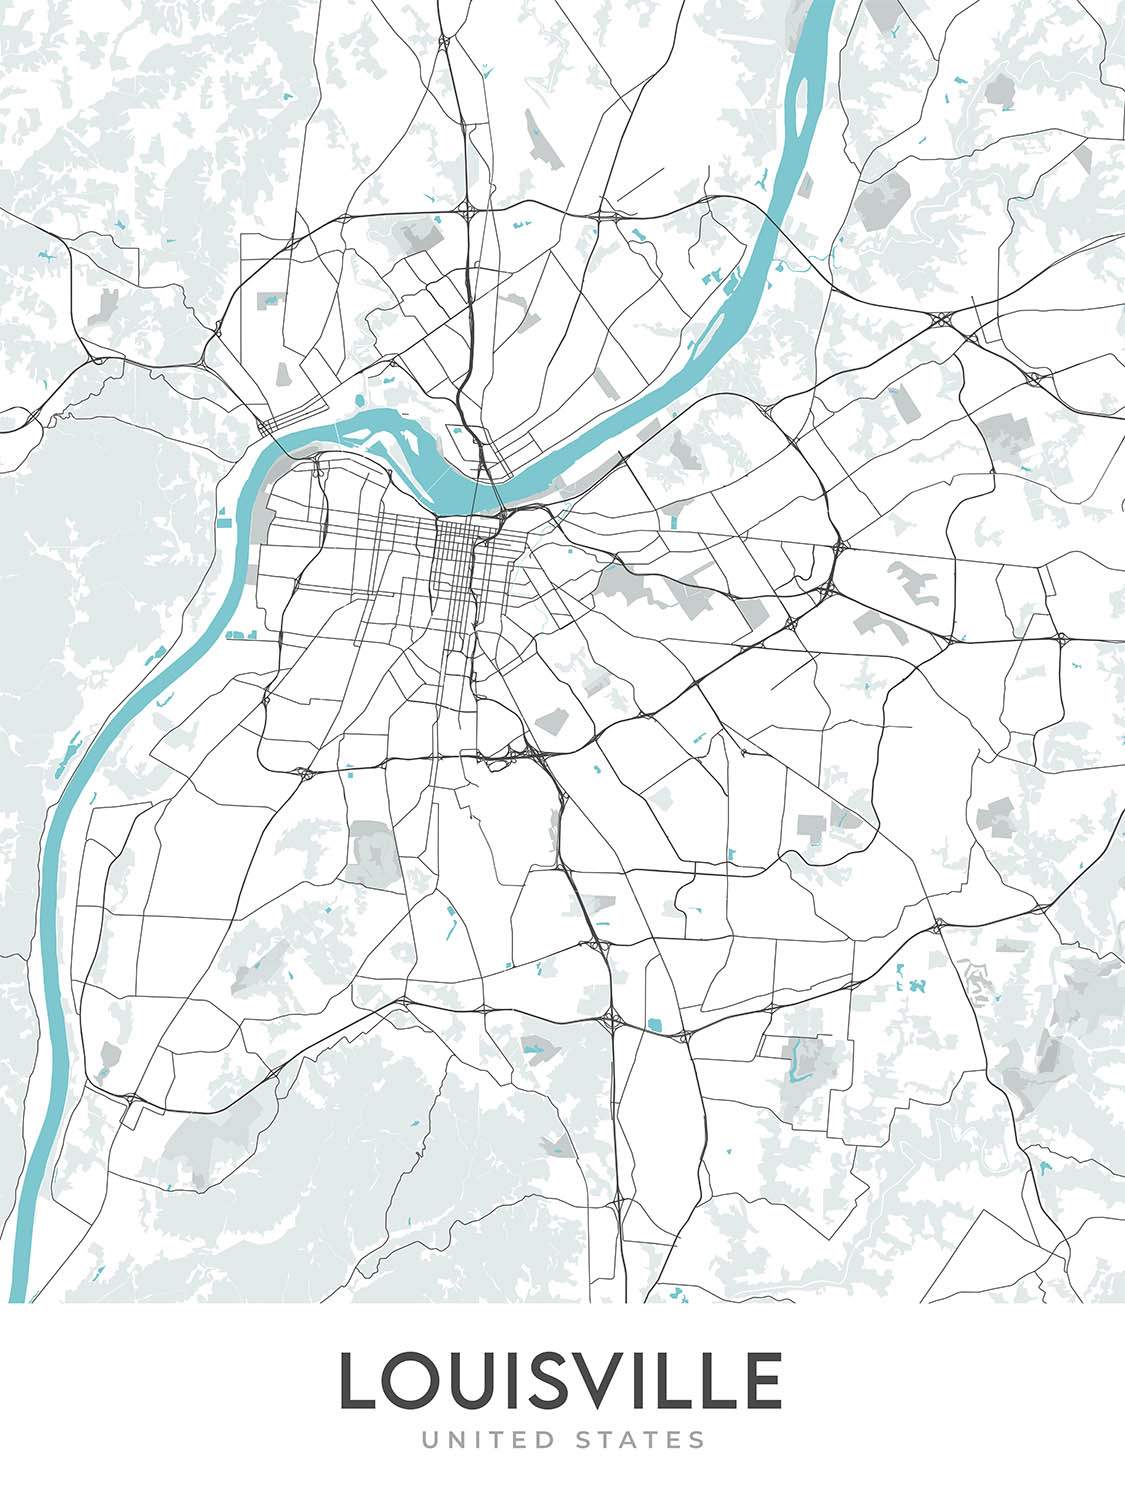 Moderner Stadtplan von Louisville, KY: Innenstadt, Old Louisville, Highlands, Muhammad Ali Center, Churchill Downs